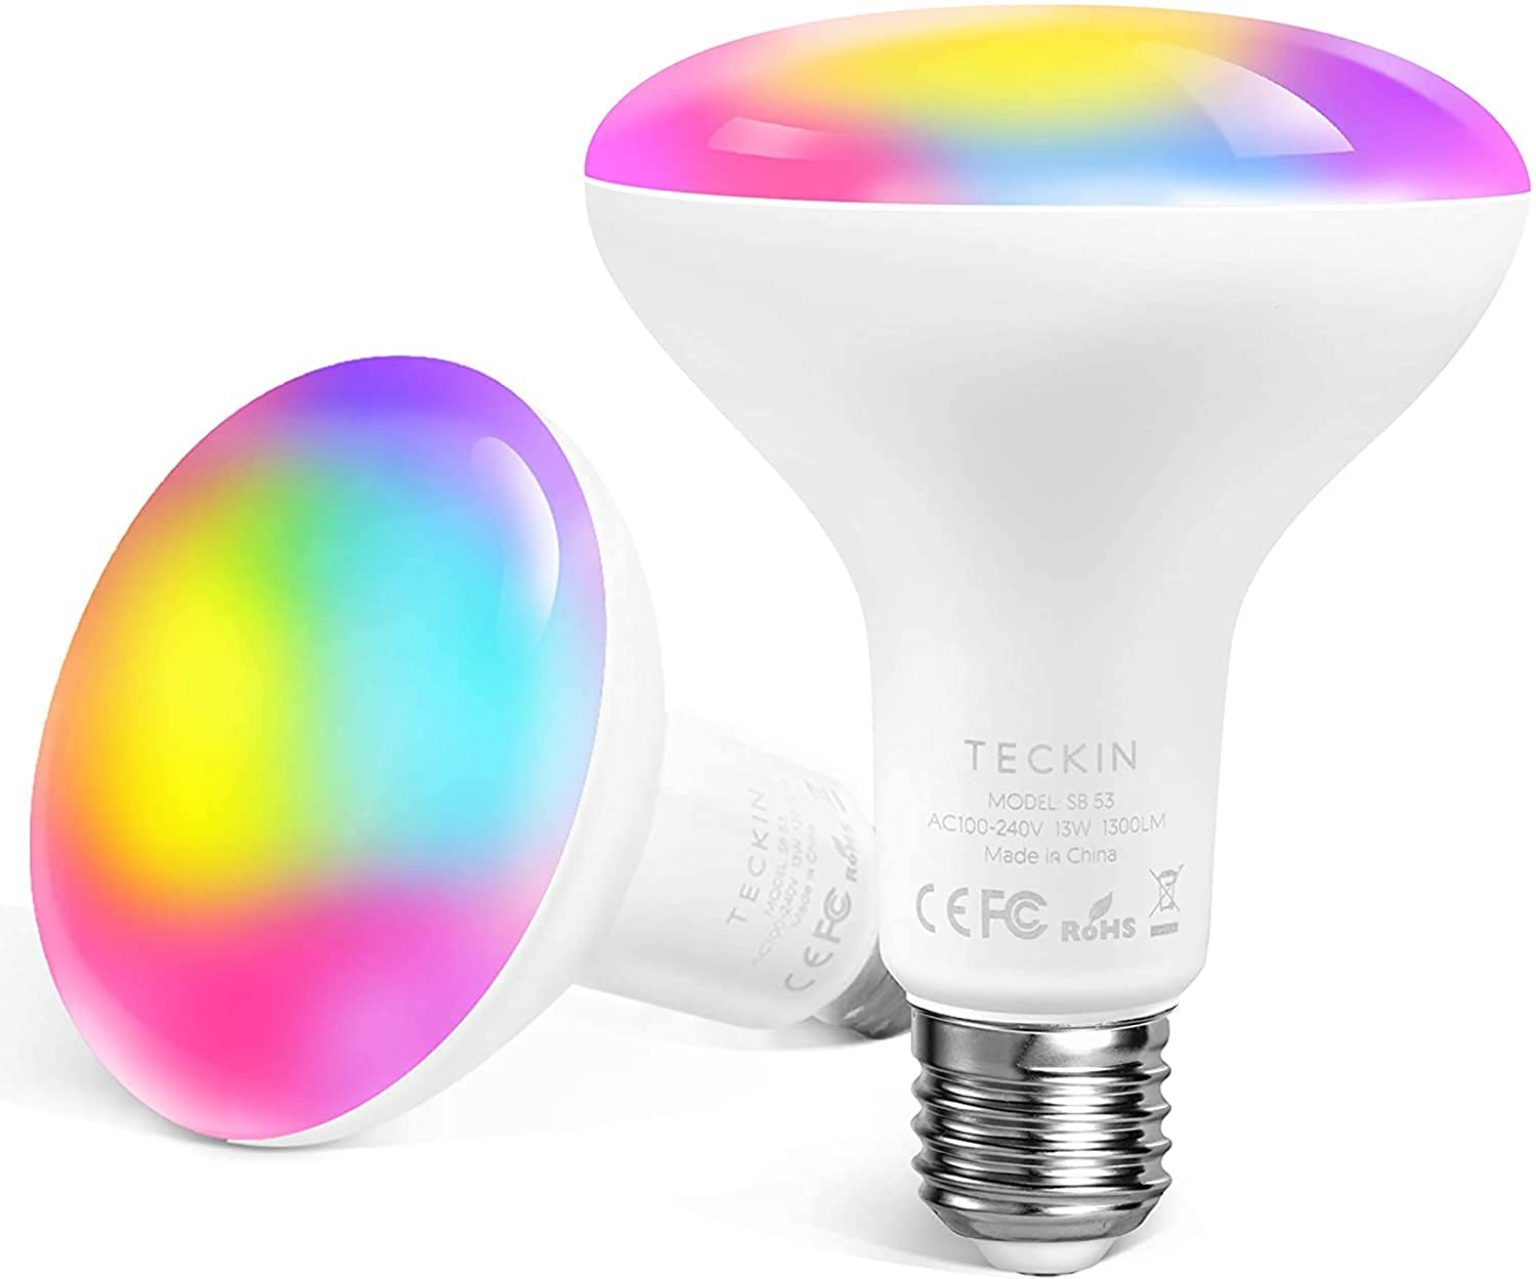 TECKIN Smart LED Bulb E27 WiFi Smart Light Bulbs, Compatible with Phone